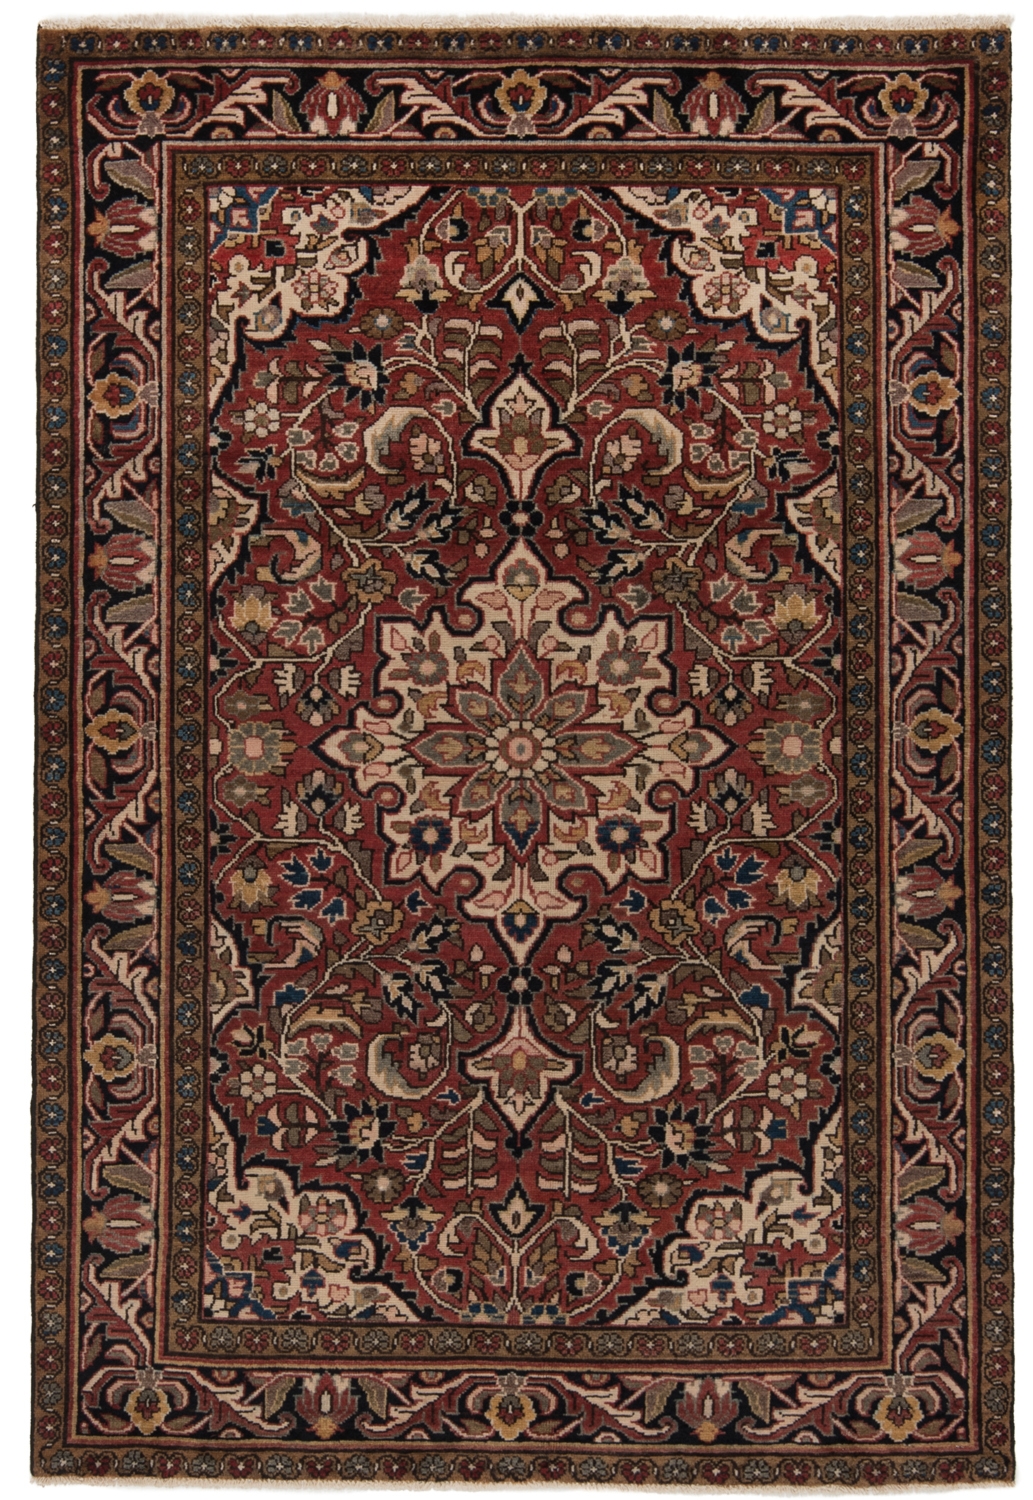 Hamedan Persian Rug Red 185 x 133 cm